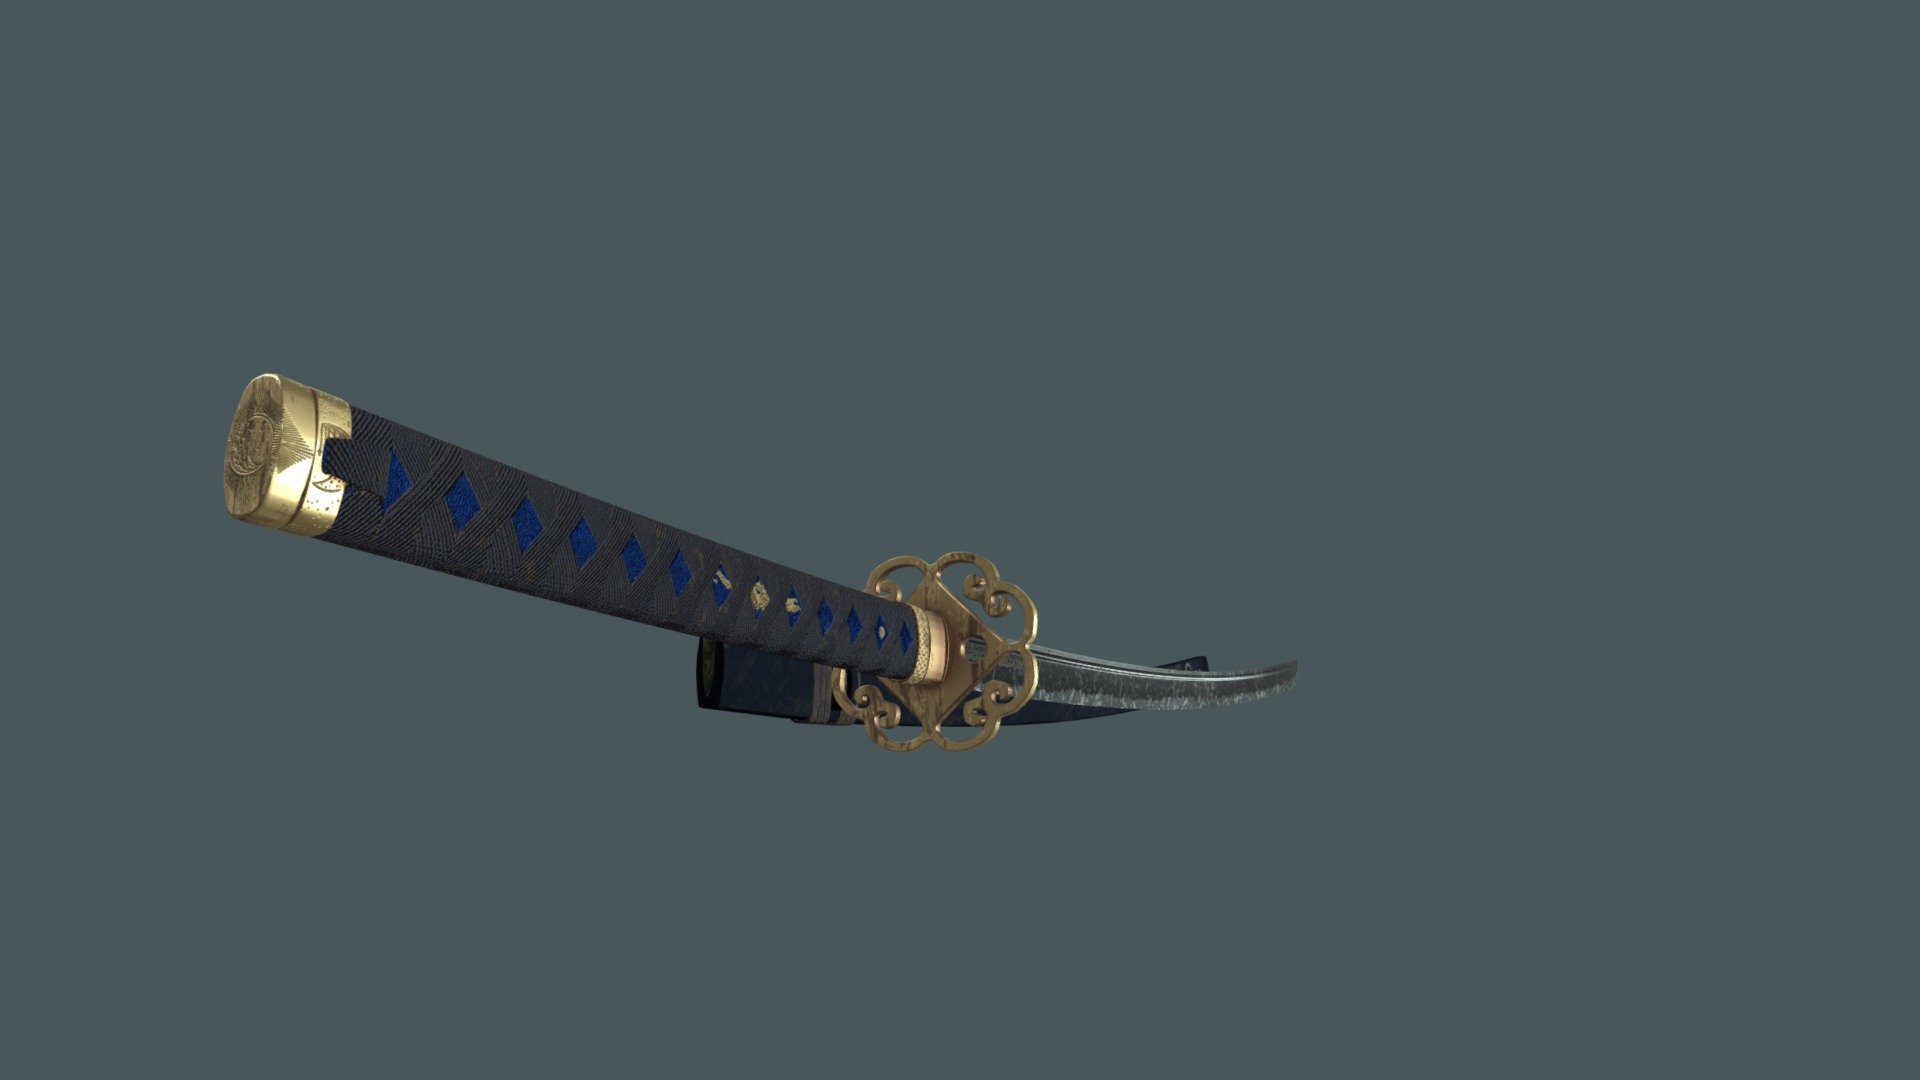 Infinity Edge Sword Fanart - 3D model by Kafu Design (@kafudesign) [08d79d4]